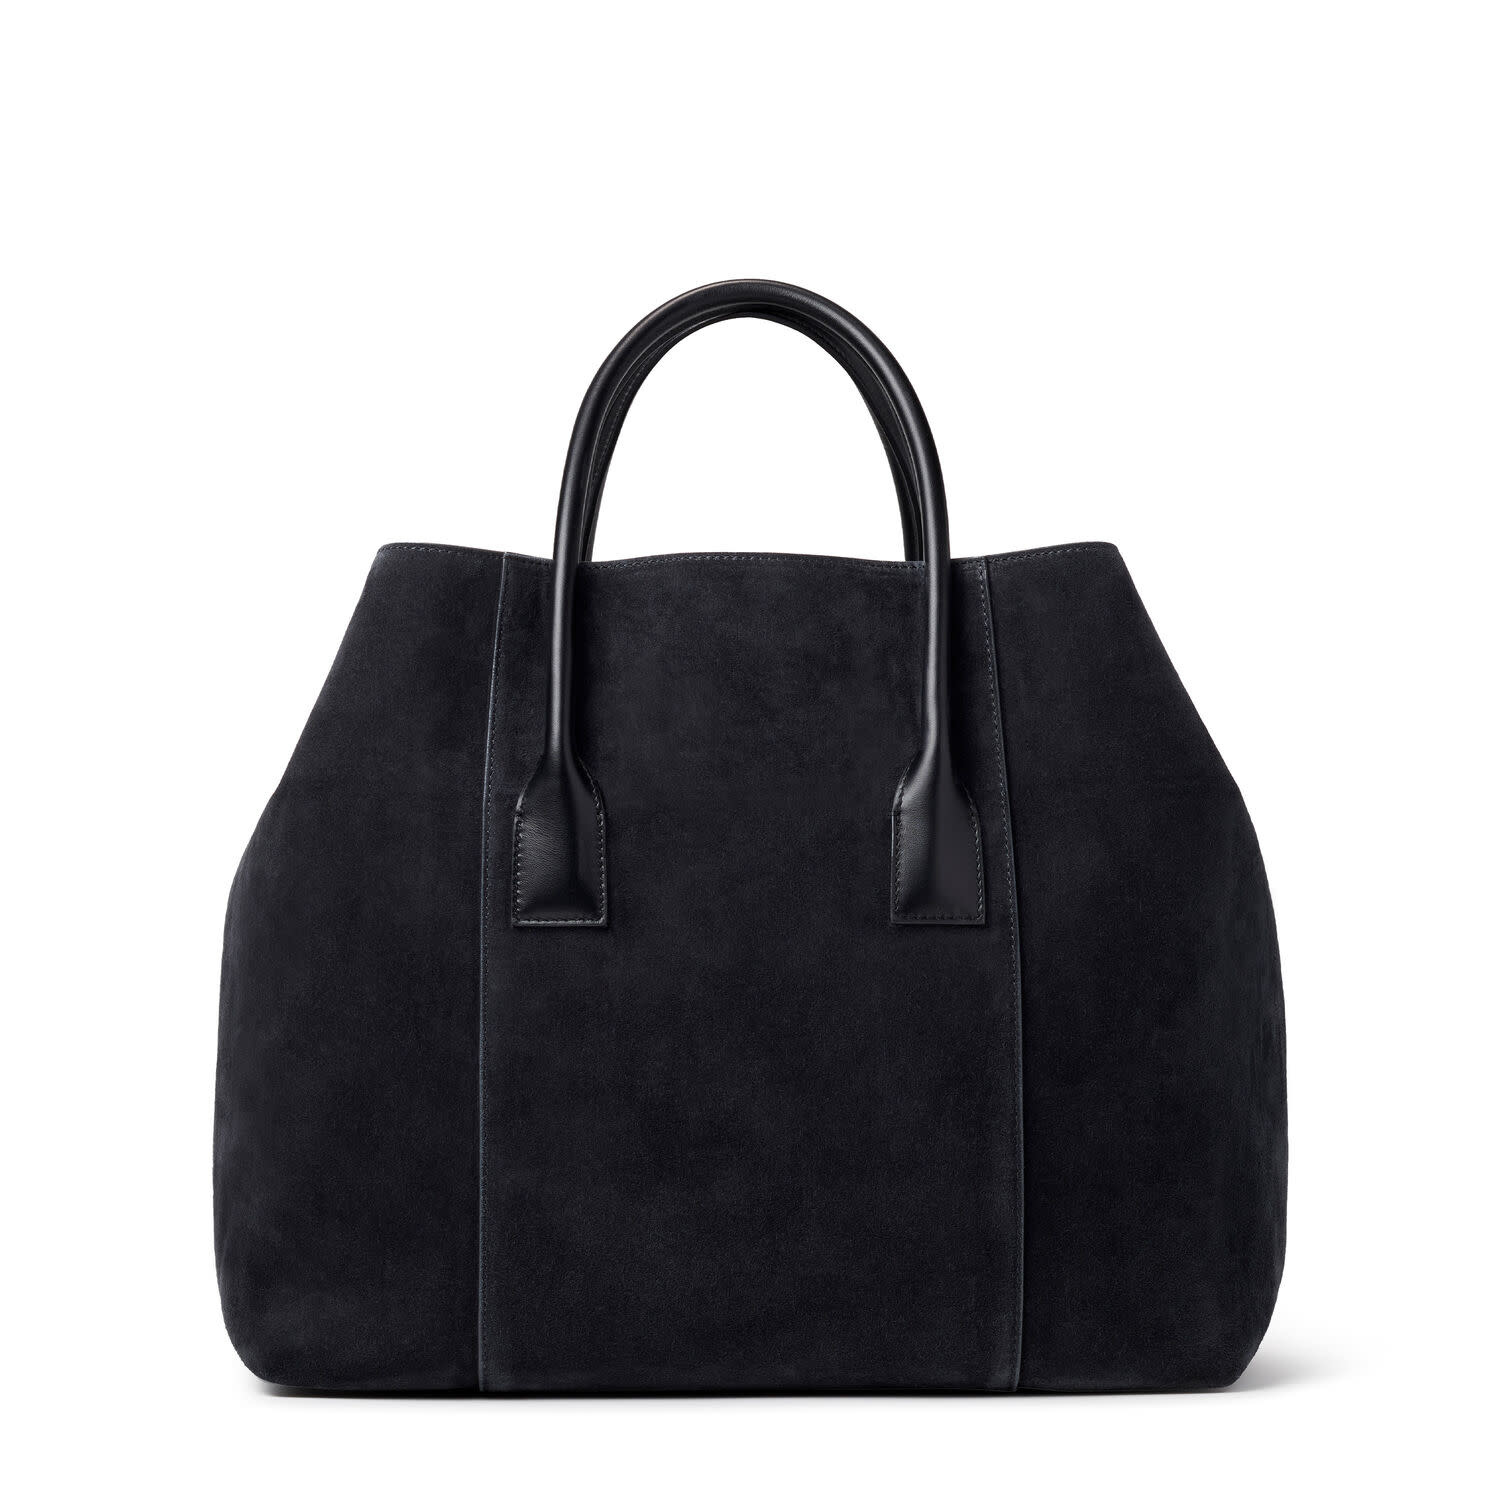 AERIN - Mini Weekender Bag - Suede Black - Made in Italy-2